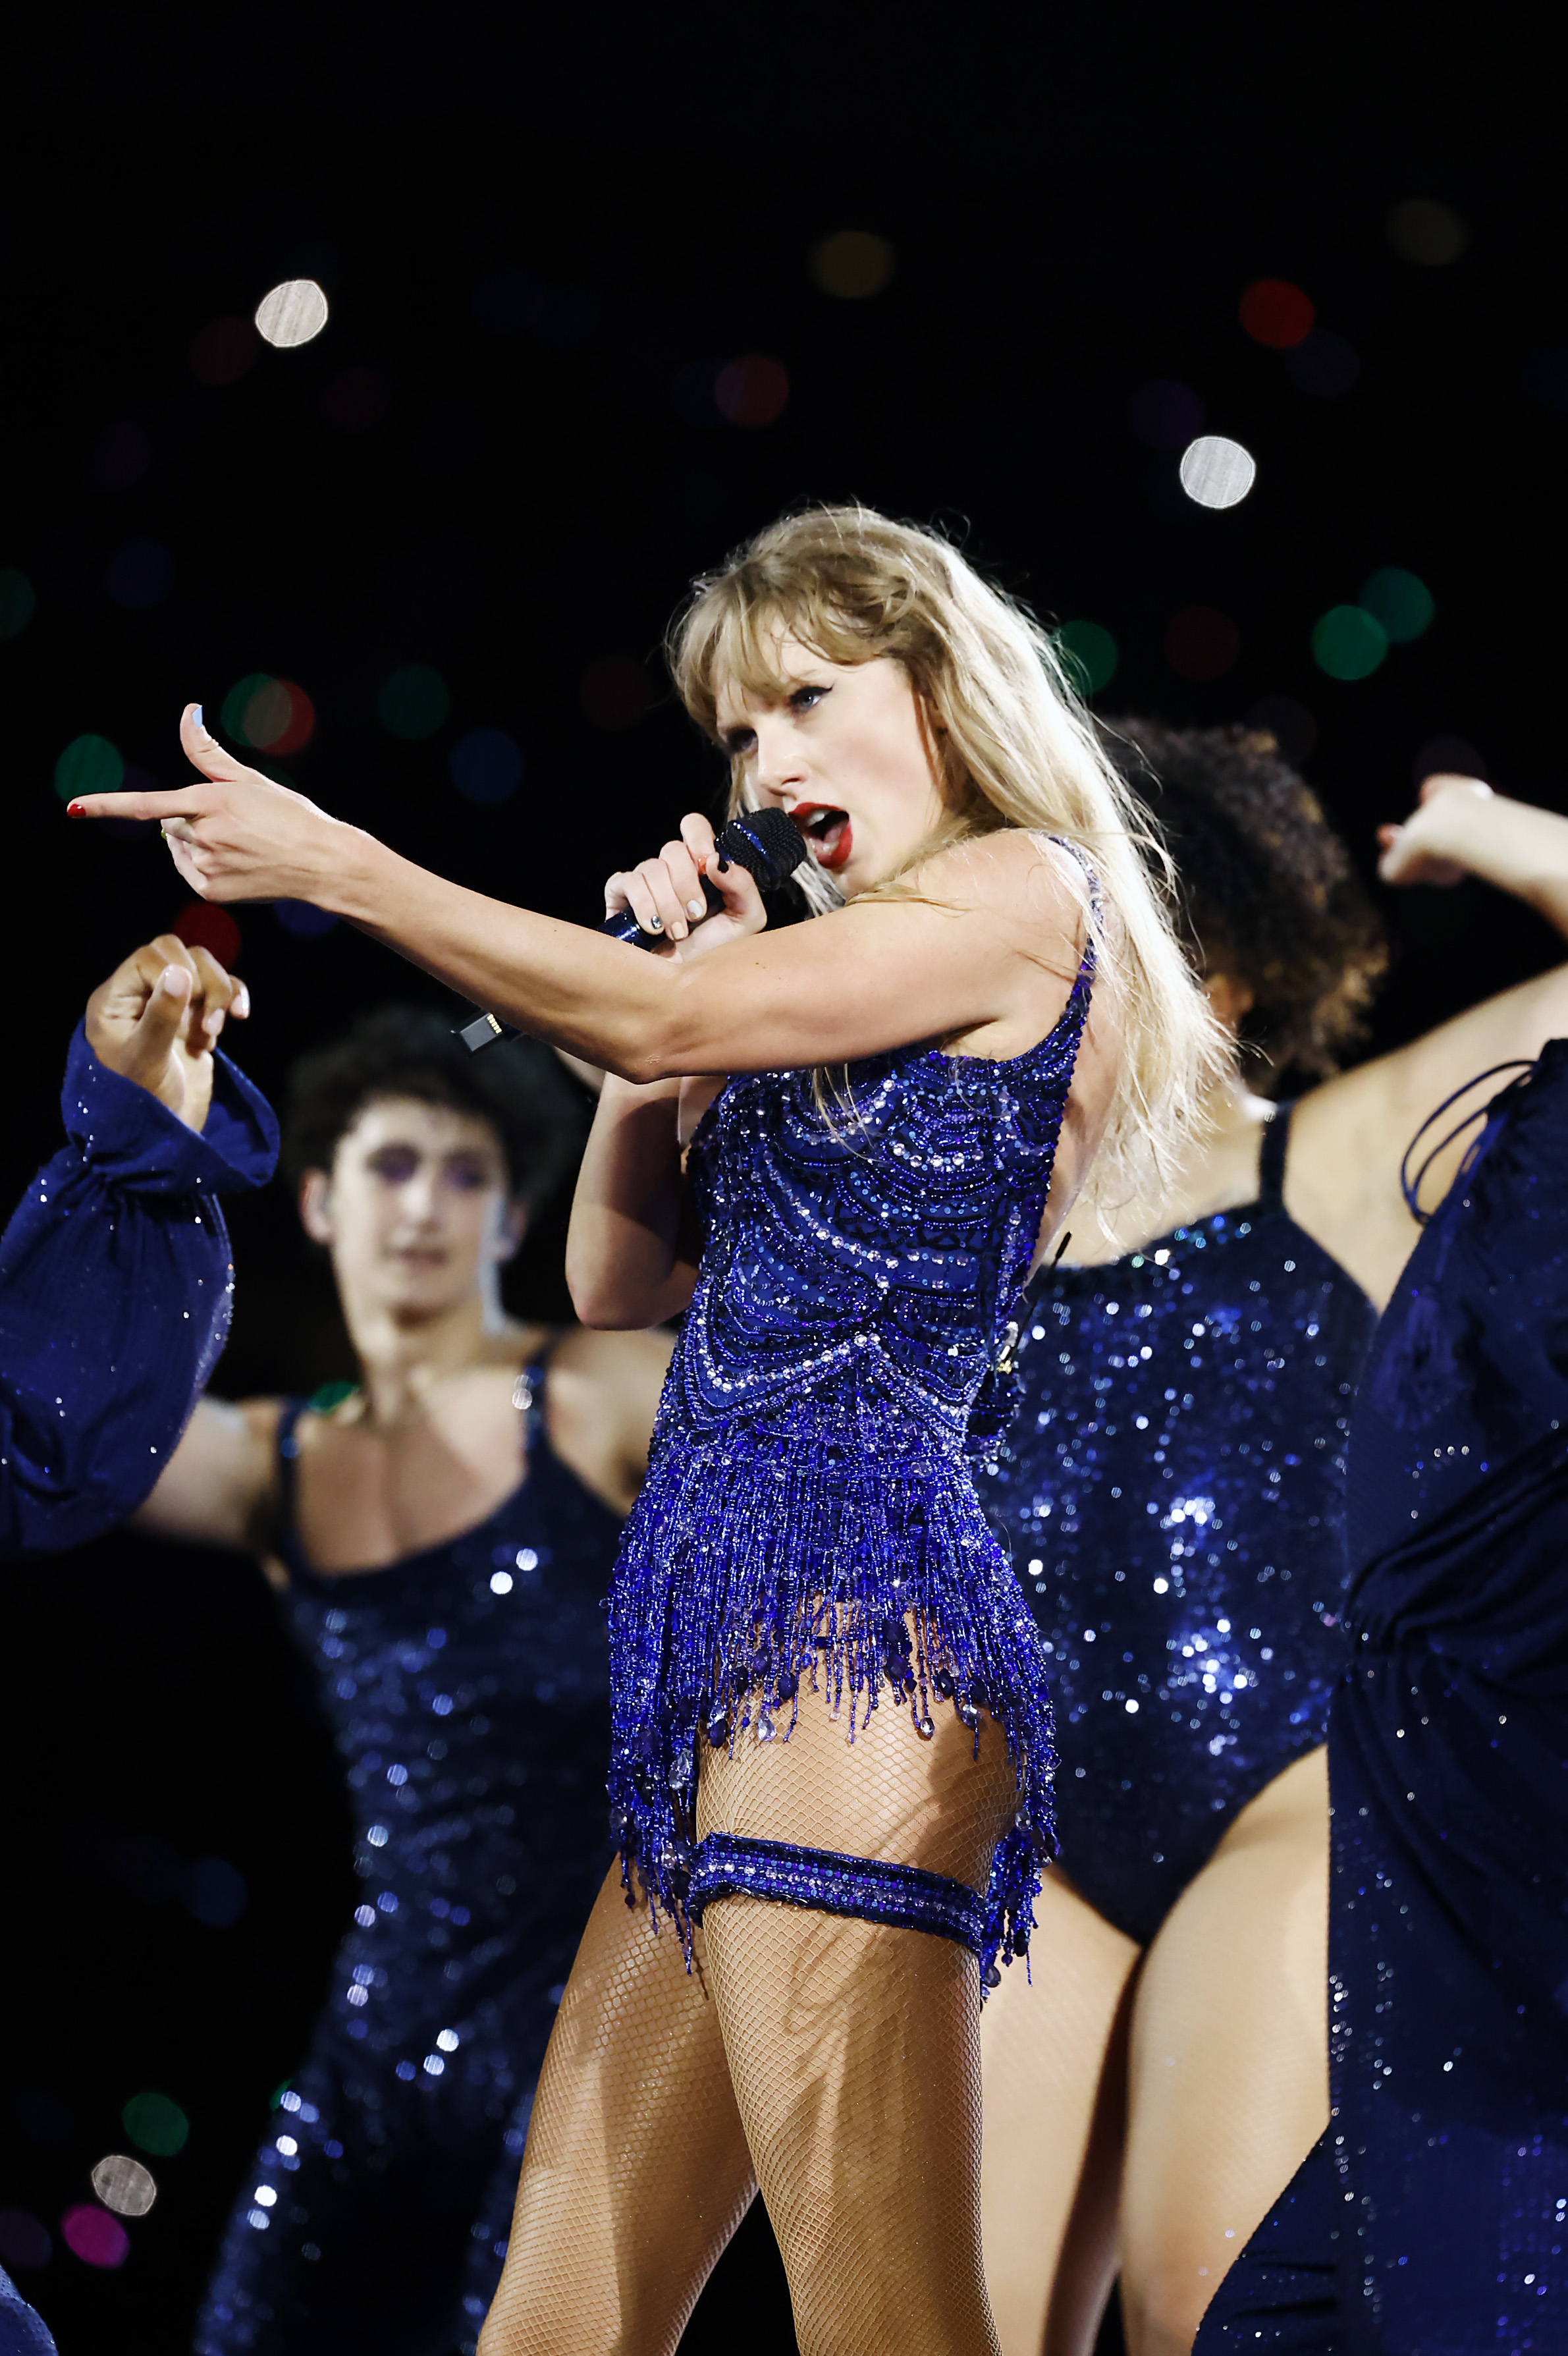 Der Unterhaltungssektor verzeichnete ein Wachstum von 15,8 Prozent, angekurbelt durch die Pläne von Popstar Taylor Swift, durch Großbritannien zu touren